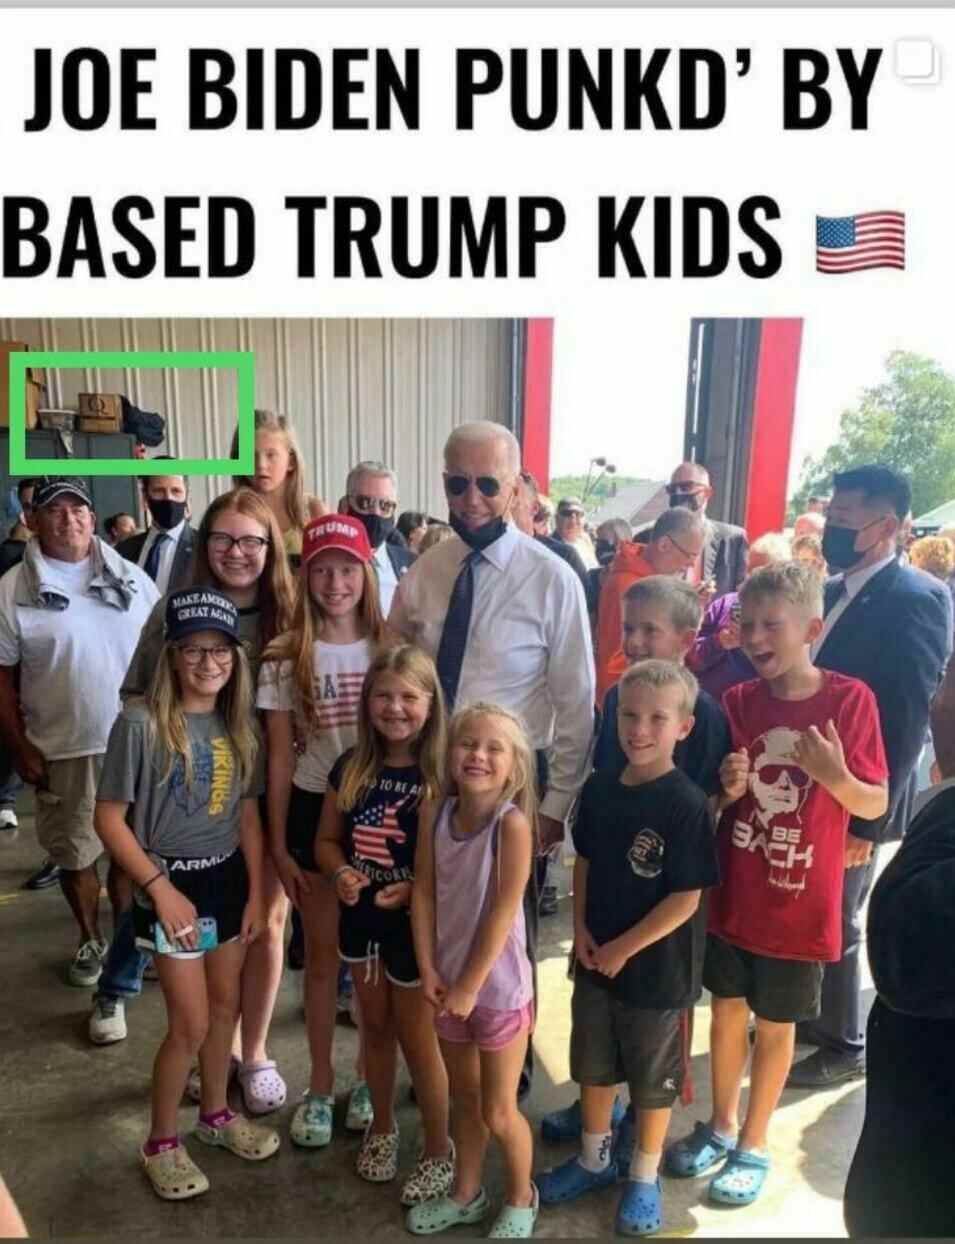 Ein Facebook-Post vom 13. September teilte das Foto von Biden, umgeben von jungen Trump-Anhängern, mit der Überschrift, dass er von den Kindern „punkd“ wurde.